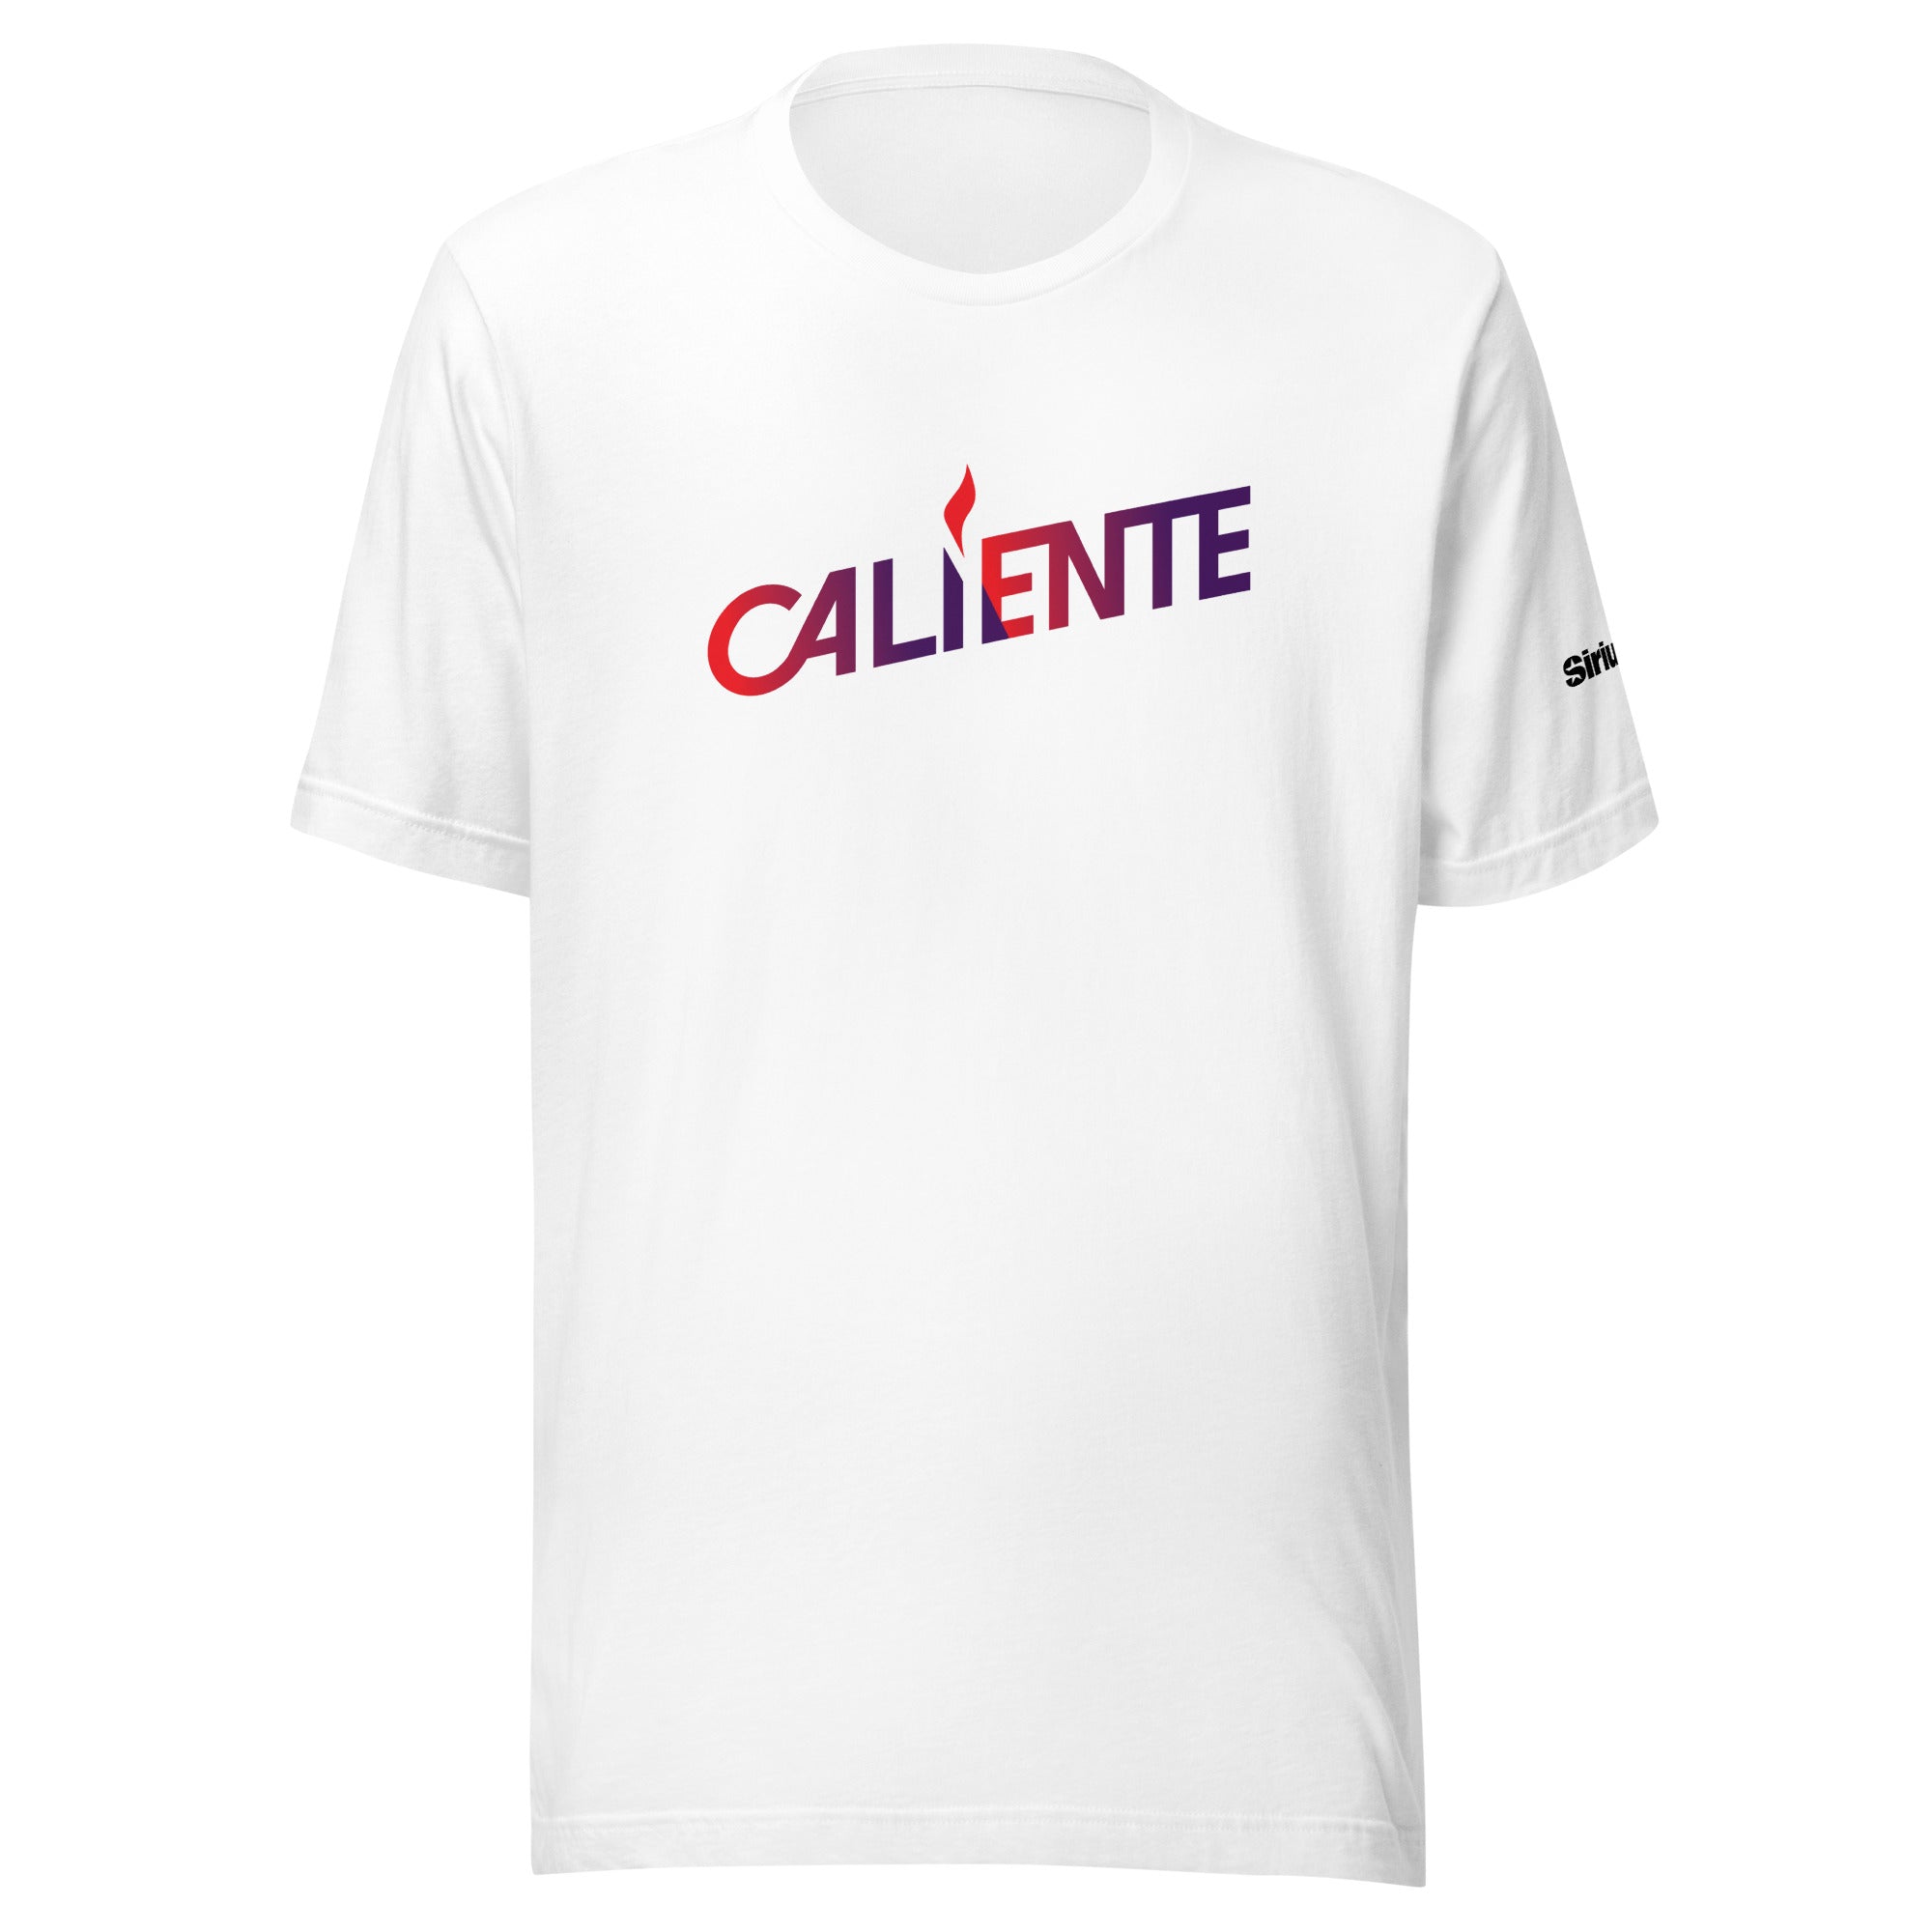 Caliente: T-shirt (White)